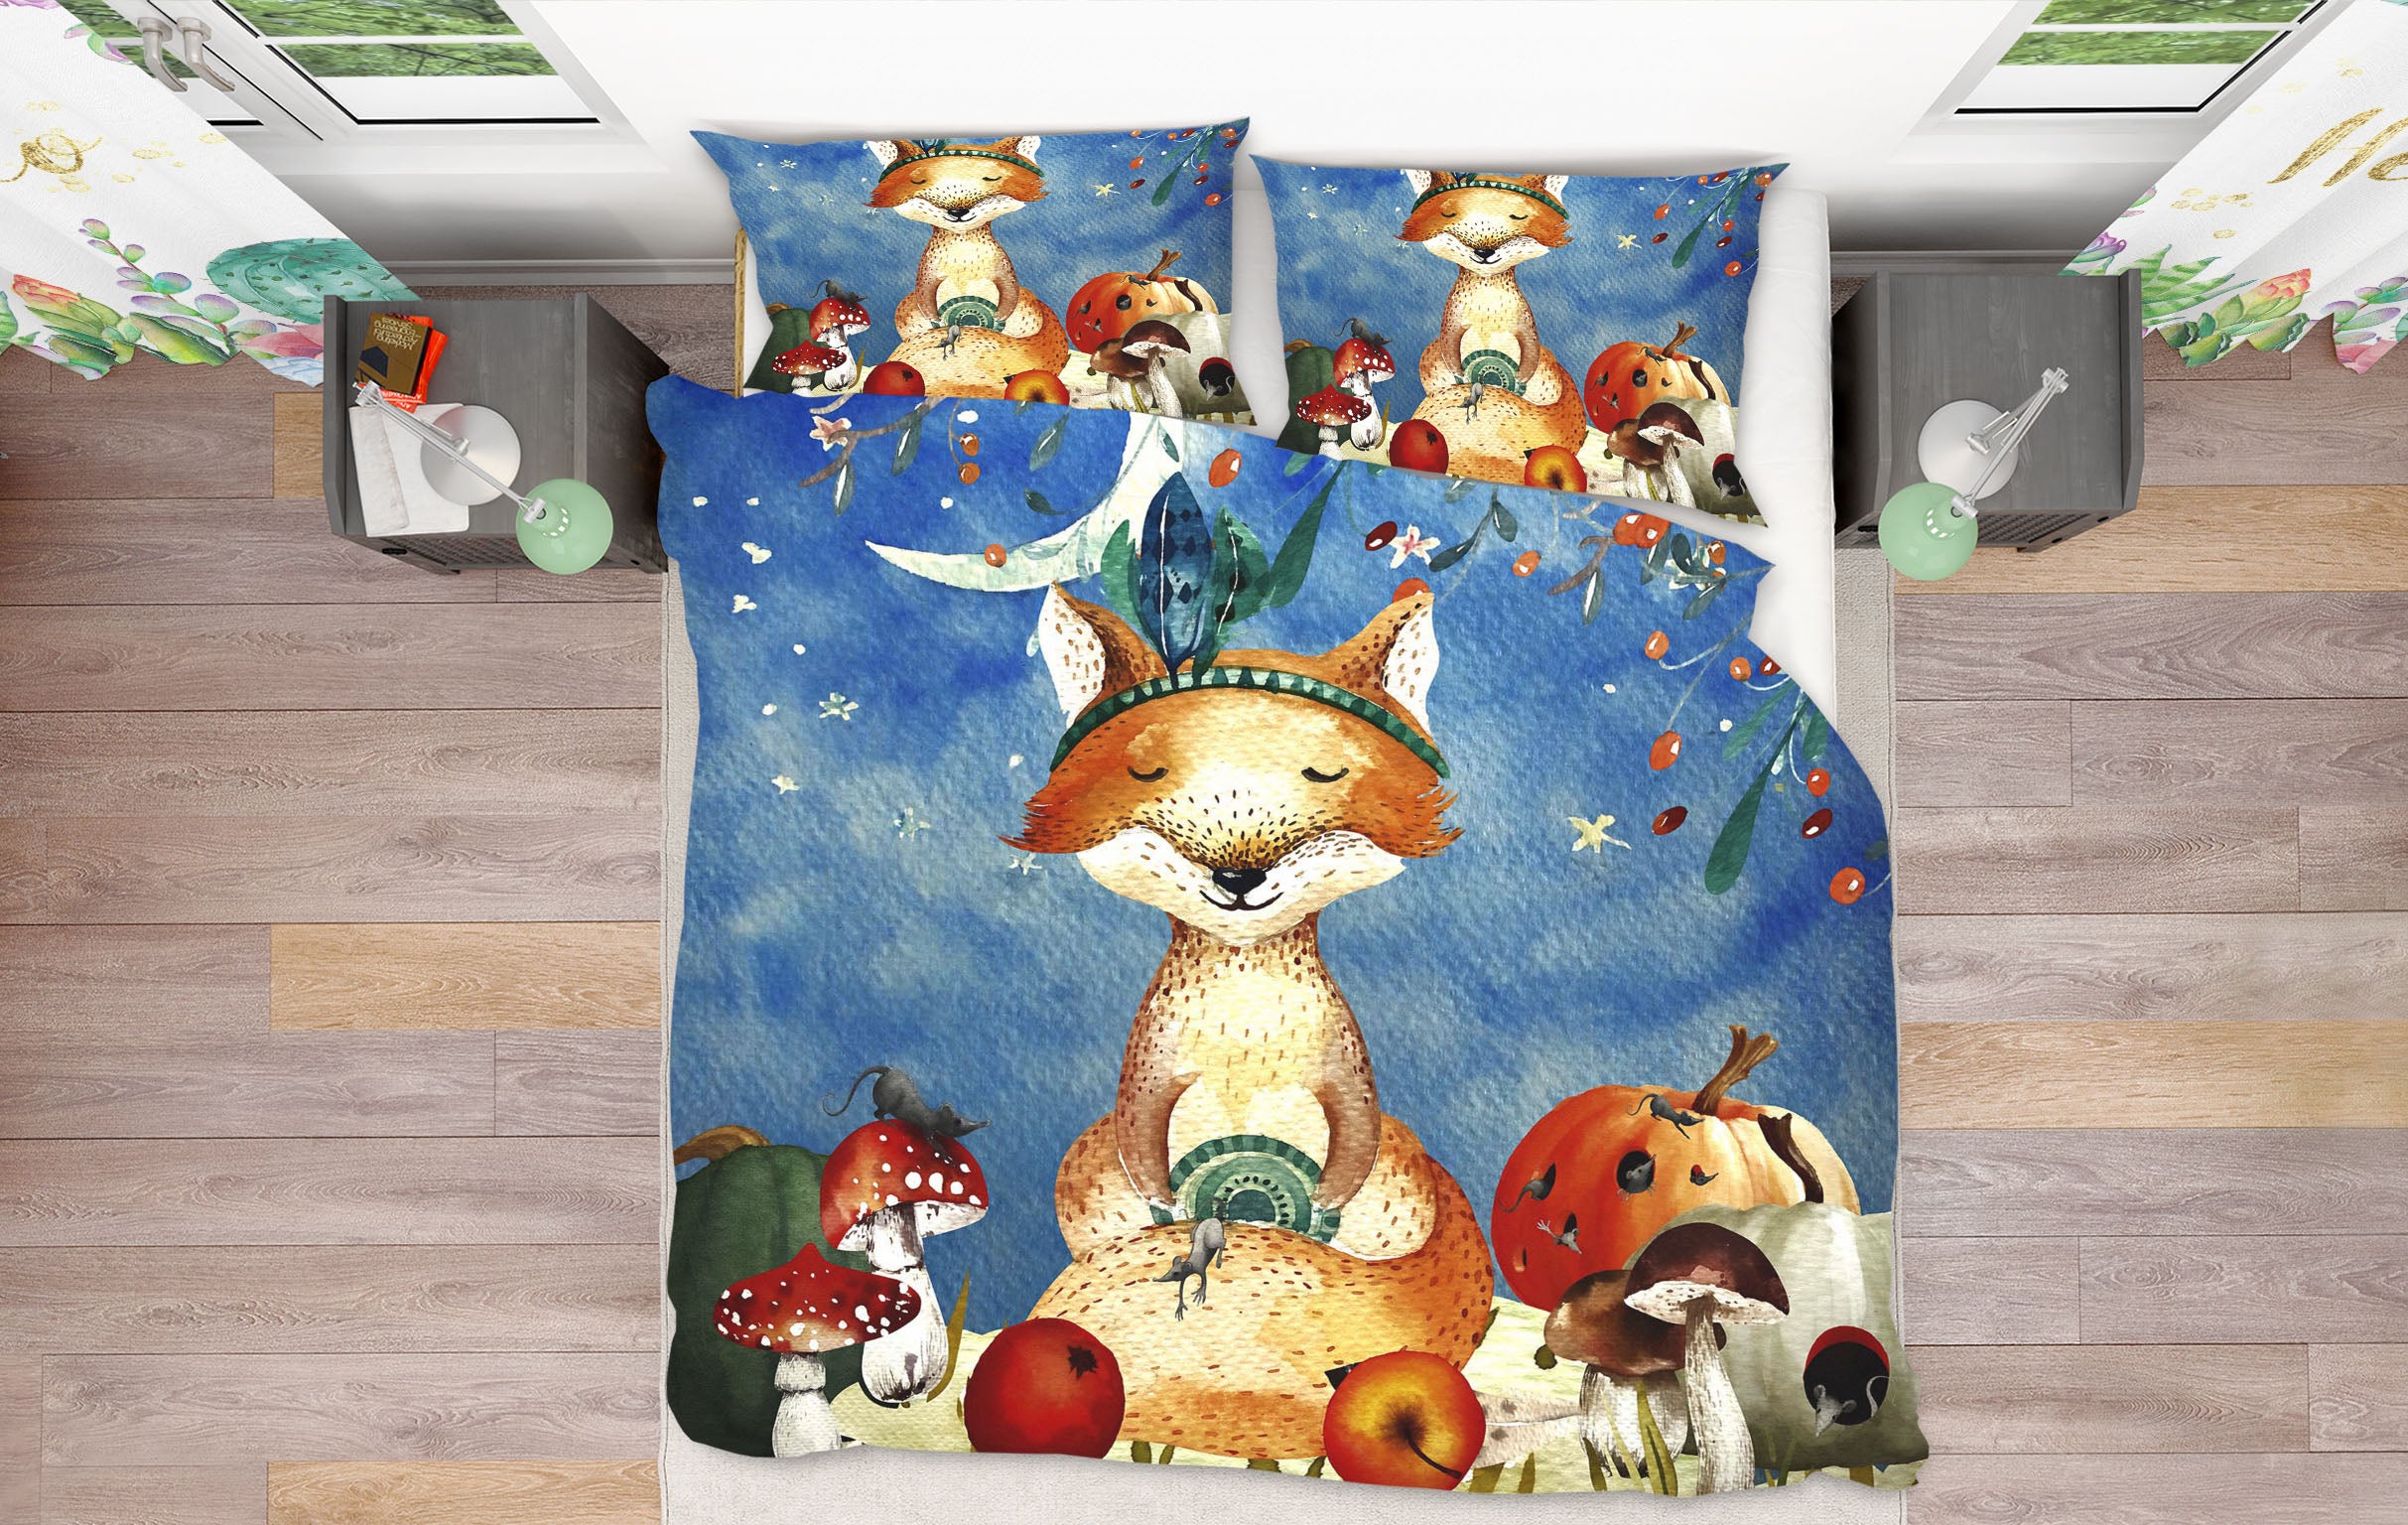 3D Moon Fox Apple 006 Uta Naumann Bedding Bed Pillowcases Quilt